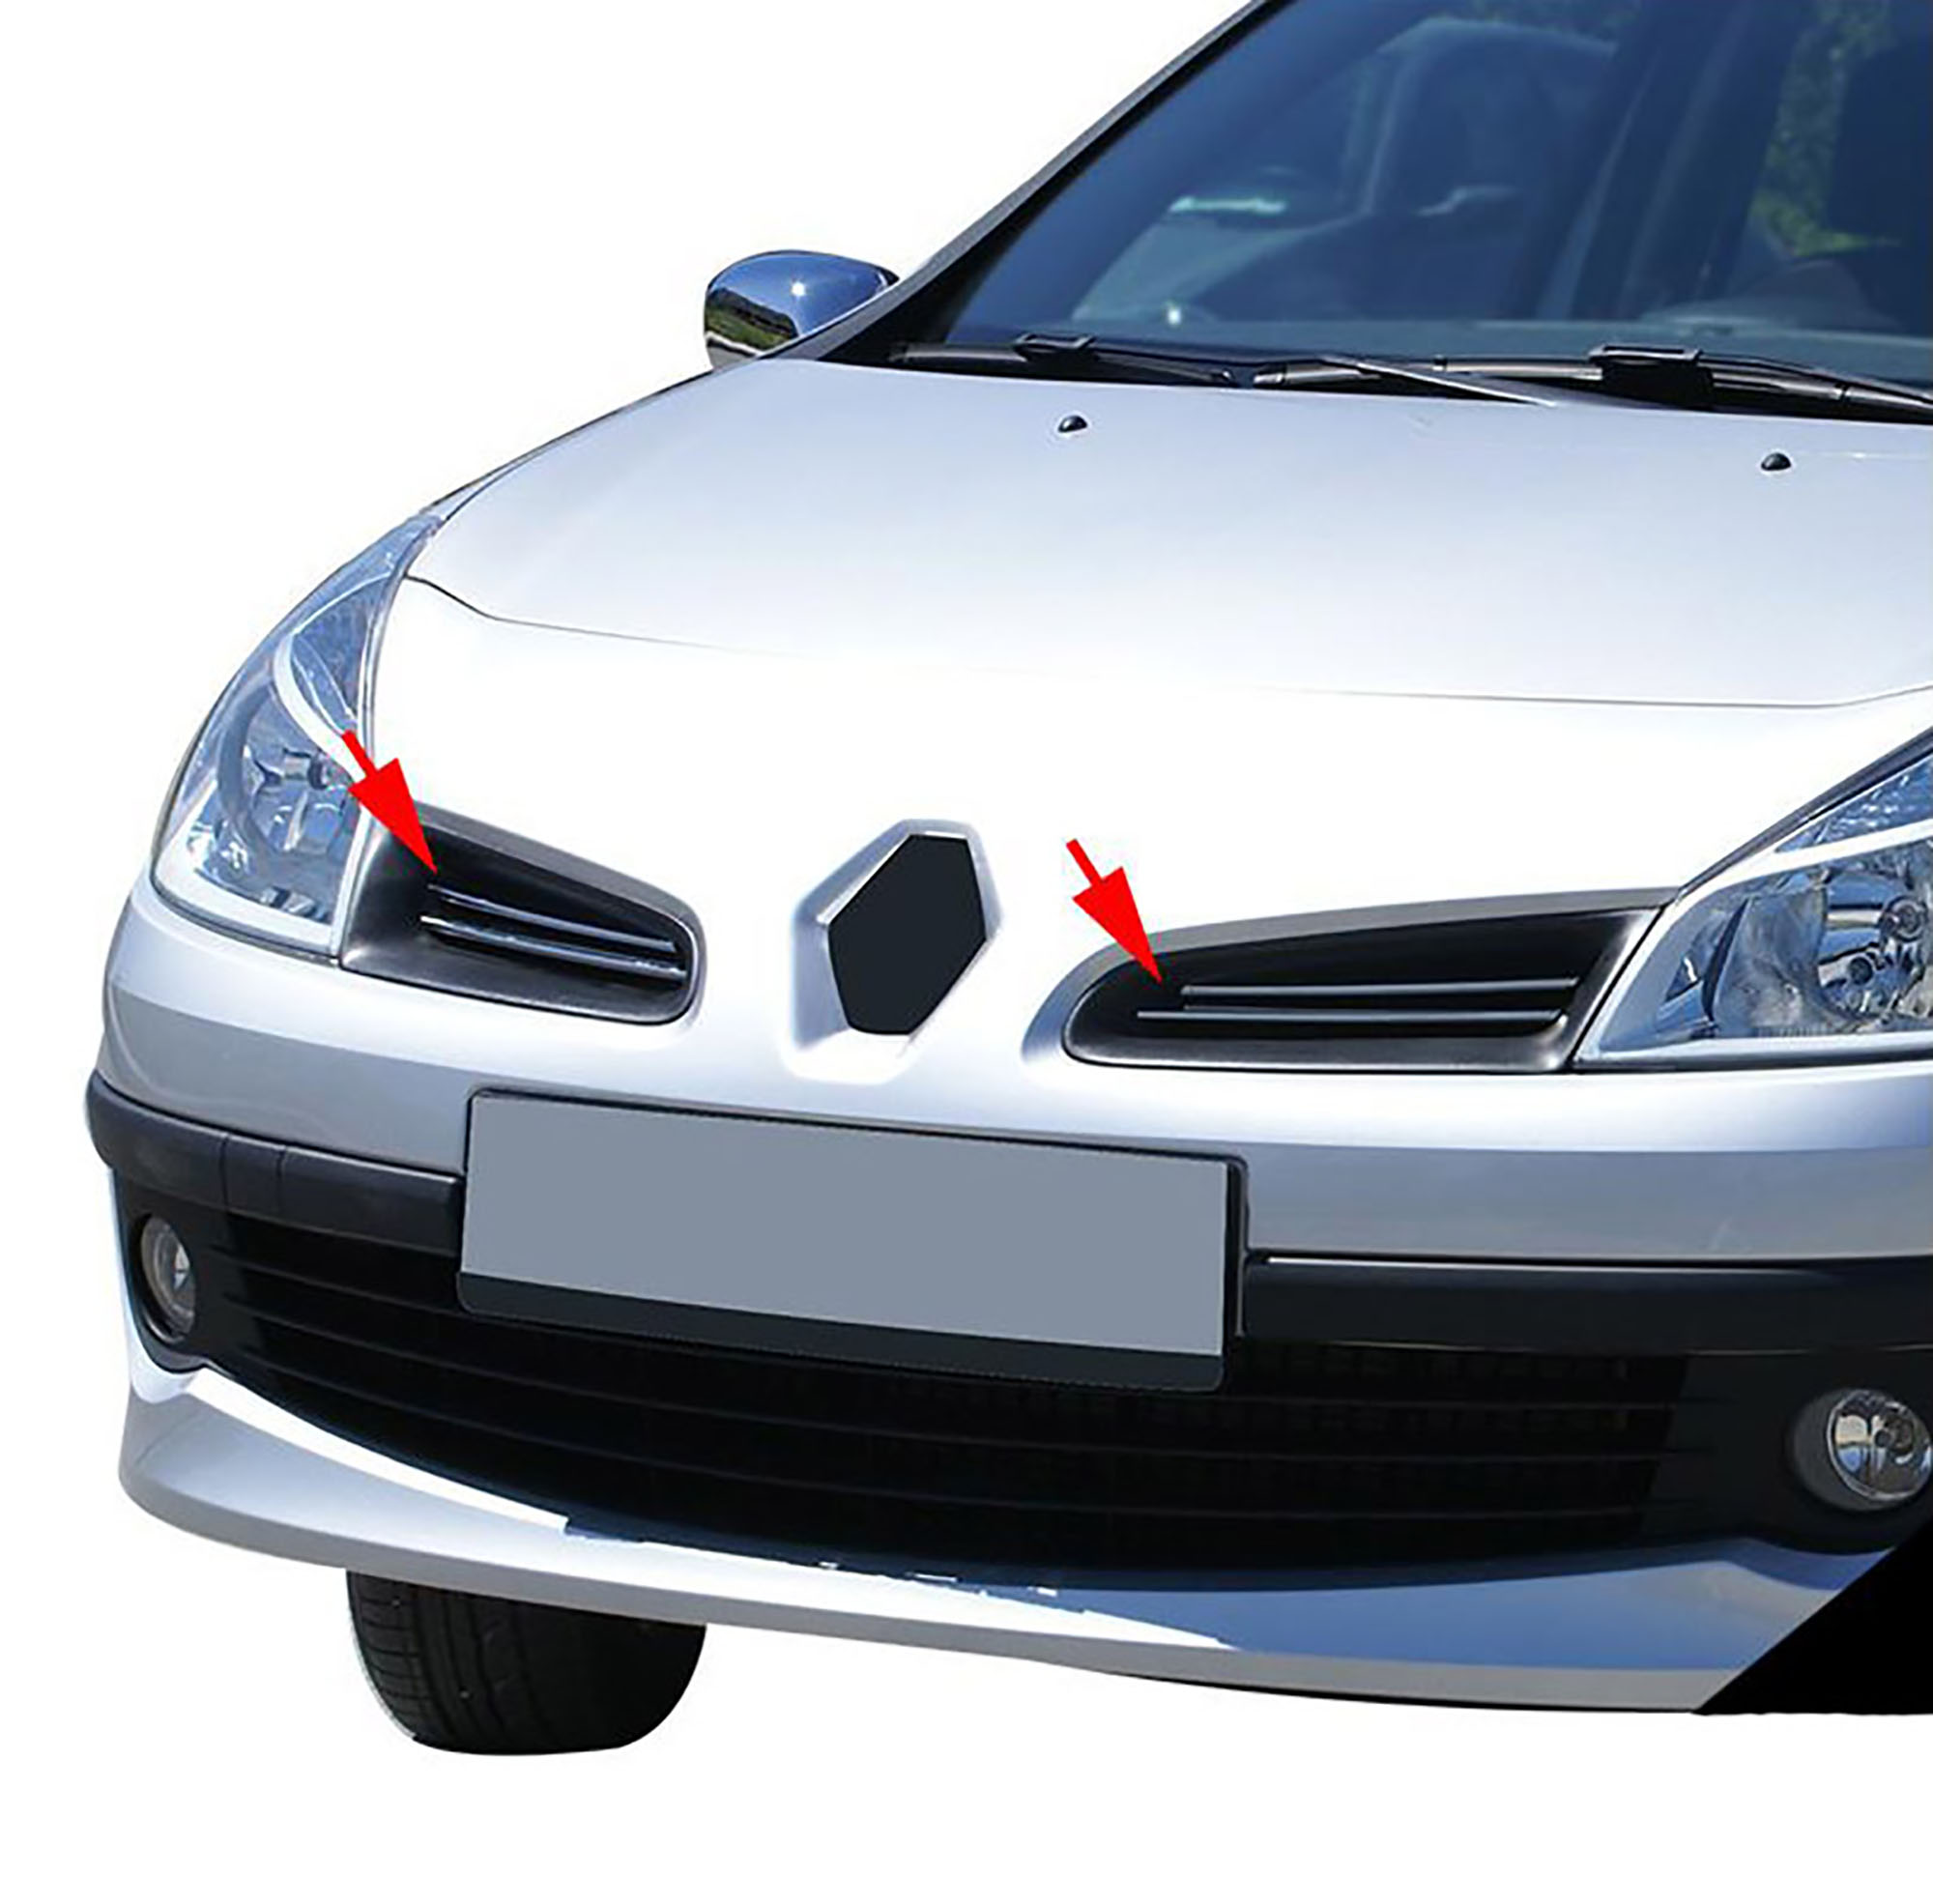 Renault Clio 3 (2006-2010) - Ön Panjur - (4 Parça P. Çelik) - (HB-5K-3K-SW)